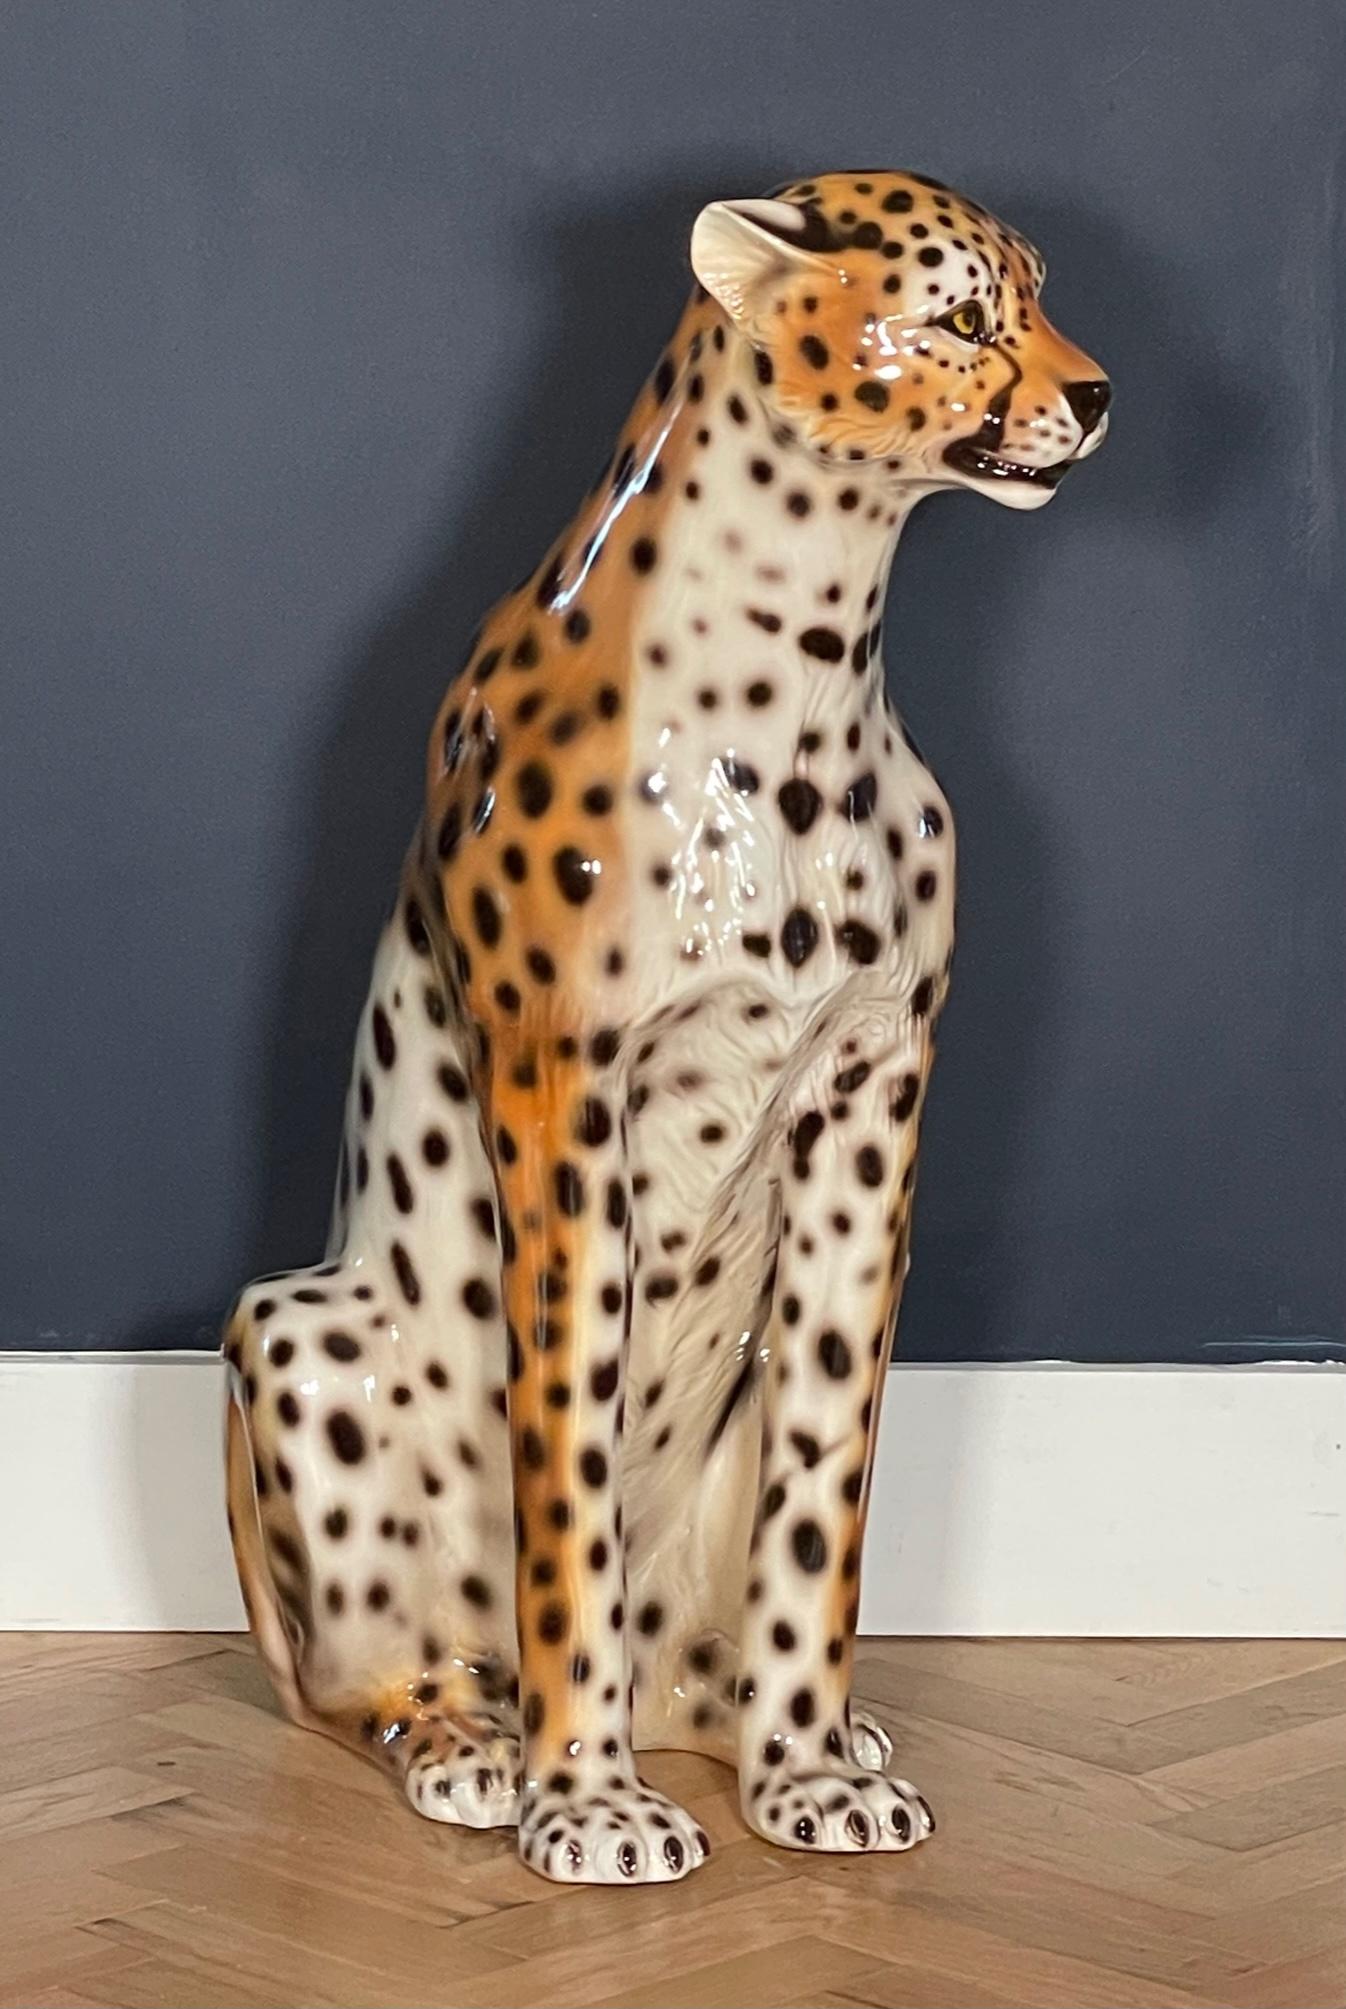 Die in Italien hergestellte Geparden- oder Leopardenstatue aus Keramik ist 30 Zoll groß und verfügt über handgemalte Details und eine helle, glänzende Oberfläche. Sehr guter Zustand, keine Chips oder Risse, siehe Fotos für Details.
 

